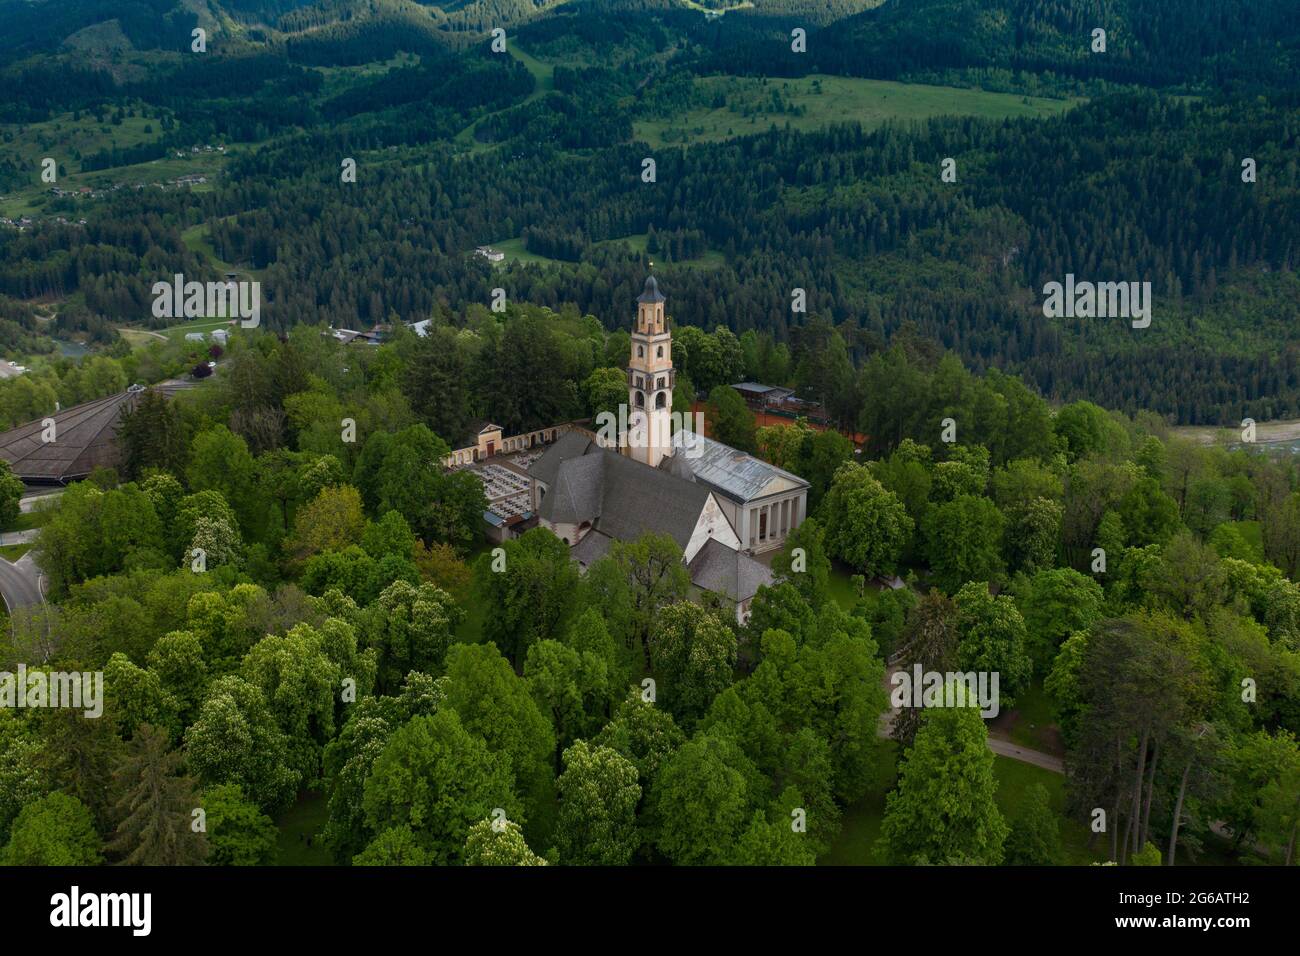 Veduta aerea della chiesa cattolica di S. Maria Assunta - Cavalese, Valle di Fiemme, Dolomiti, nord Trento, Italia Foto Stock